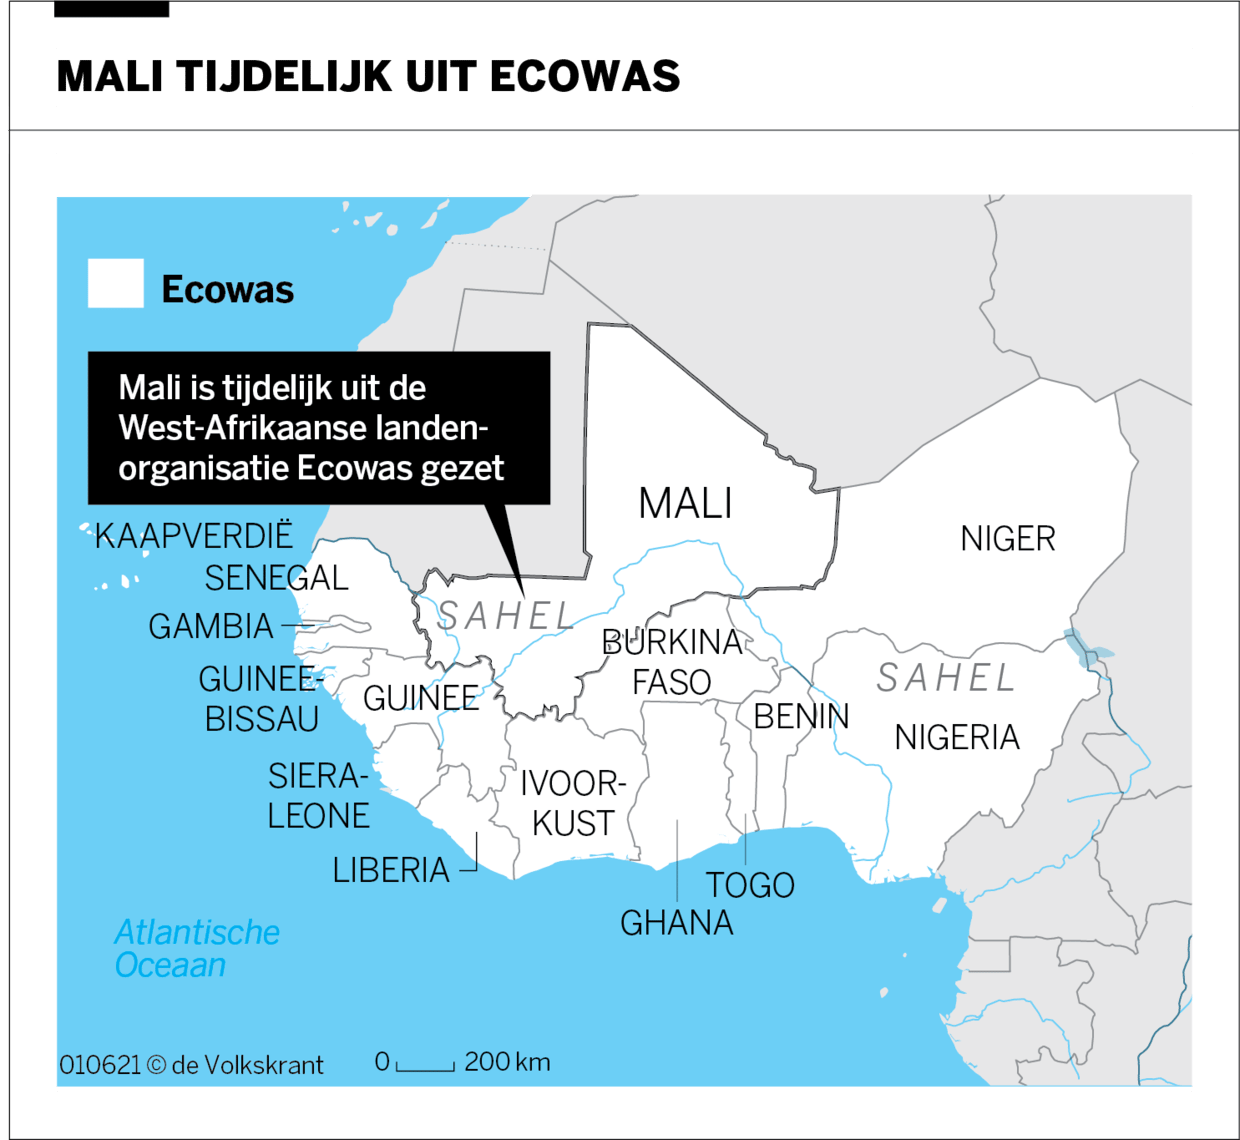 Dua kudeta dalam kurun waktu 9 bulan adalah hal yang terlalu sering terjadi di Mali, namun tidak ada jalan keluar dari kekacauan yang sudah terlihat